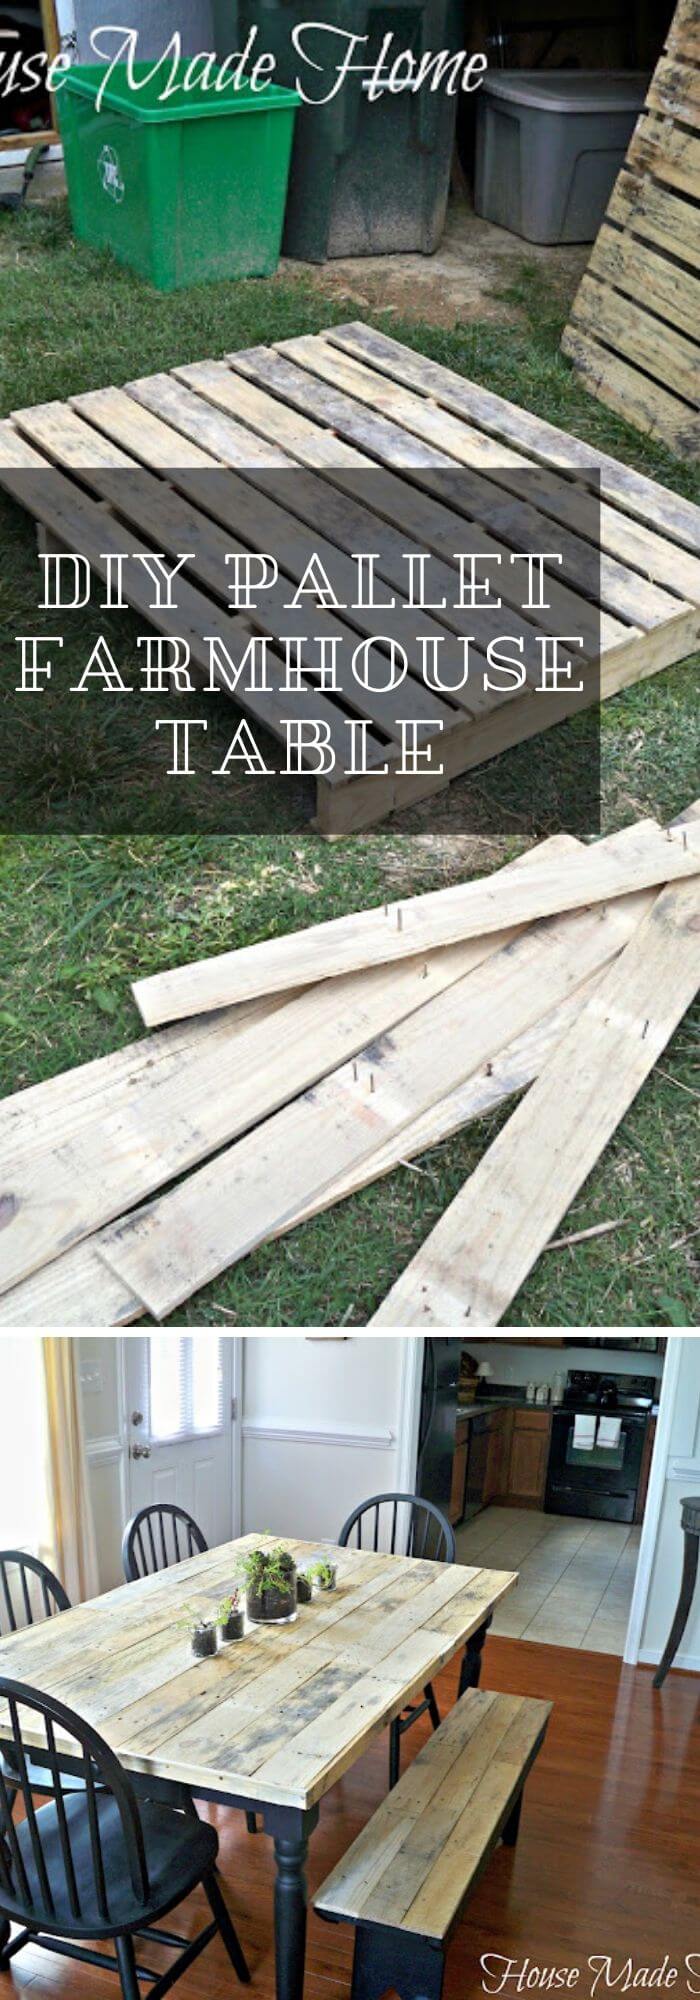 28 farmhouse table ideas